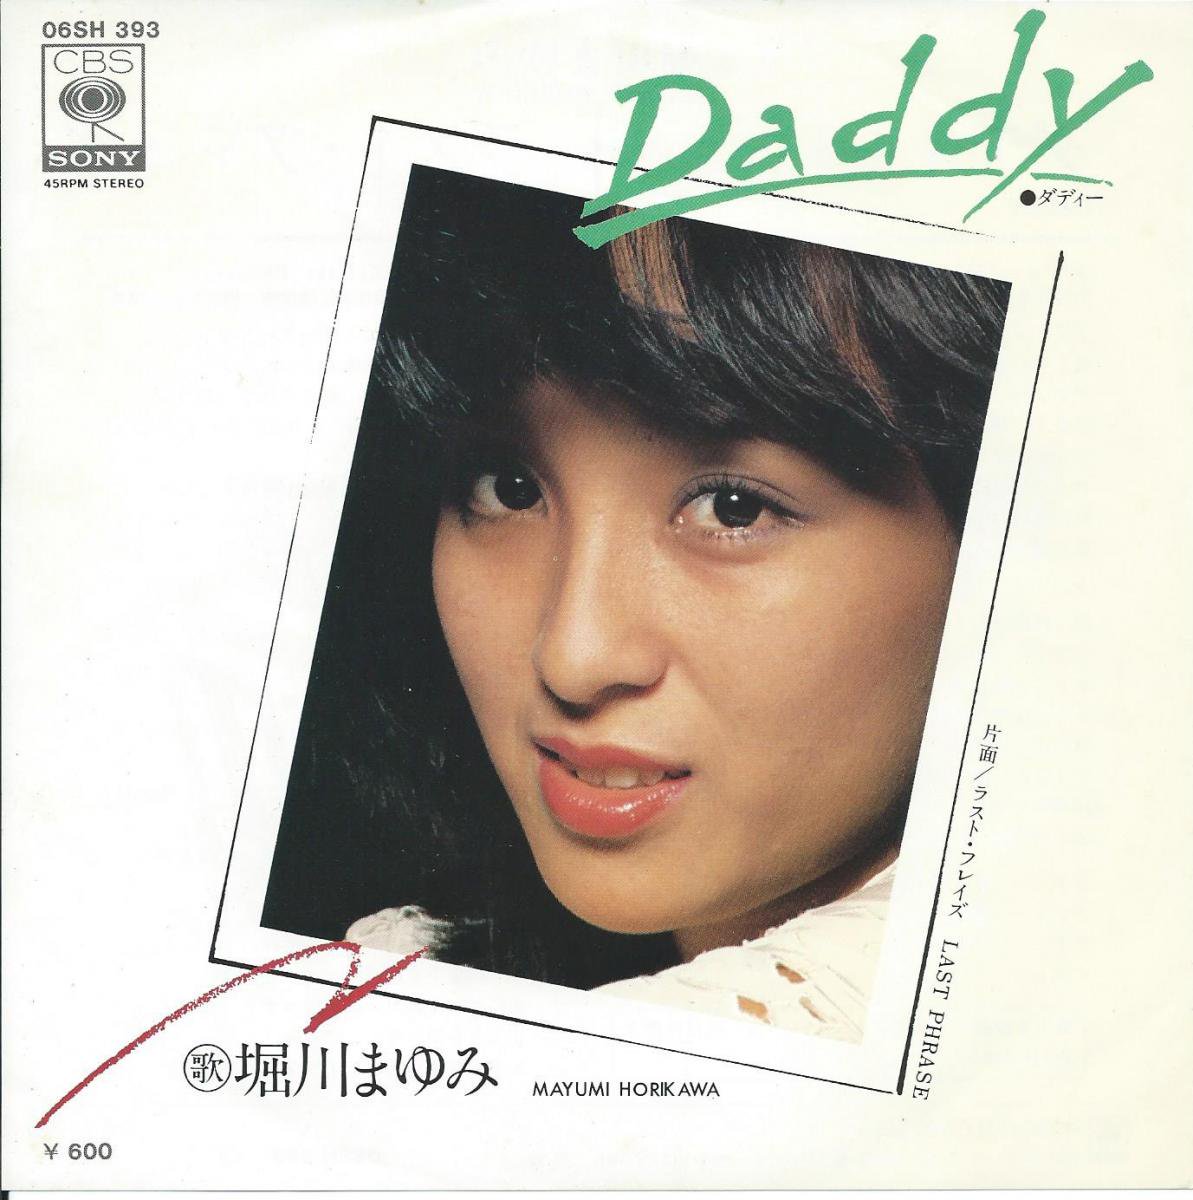 堀川まゆみ Mayumi Horikawa ダディ Daddy ラスト フレイズ Last Phrase 7 Hip Tank Records